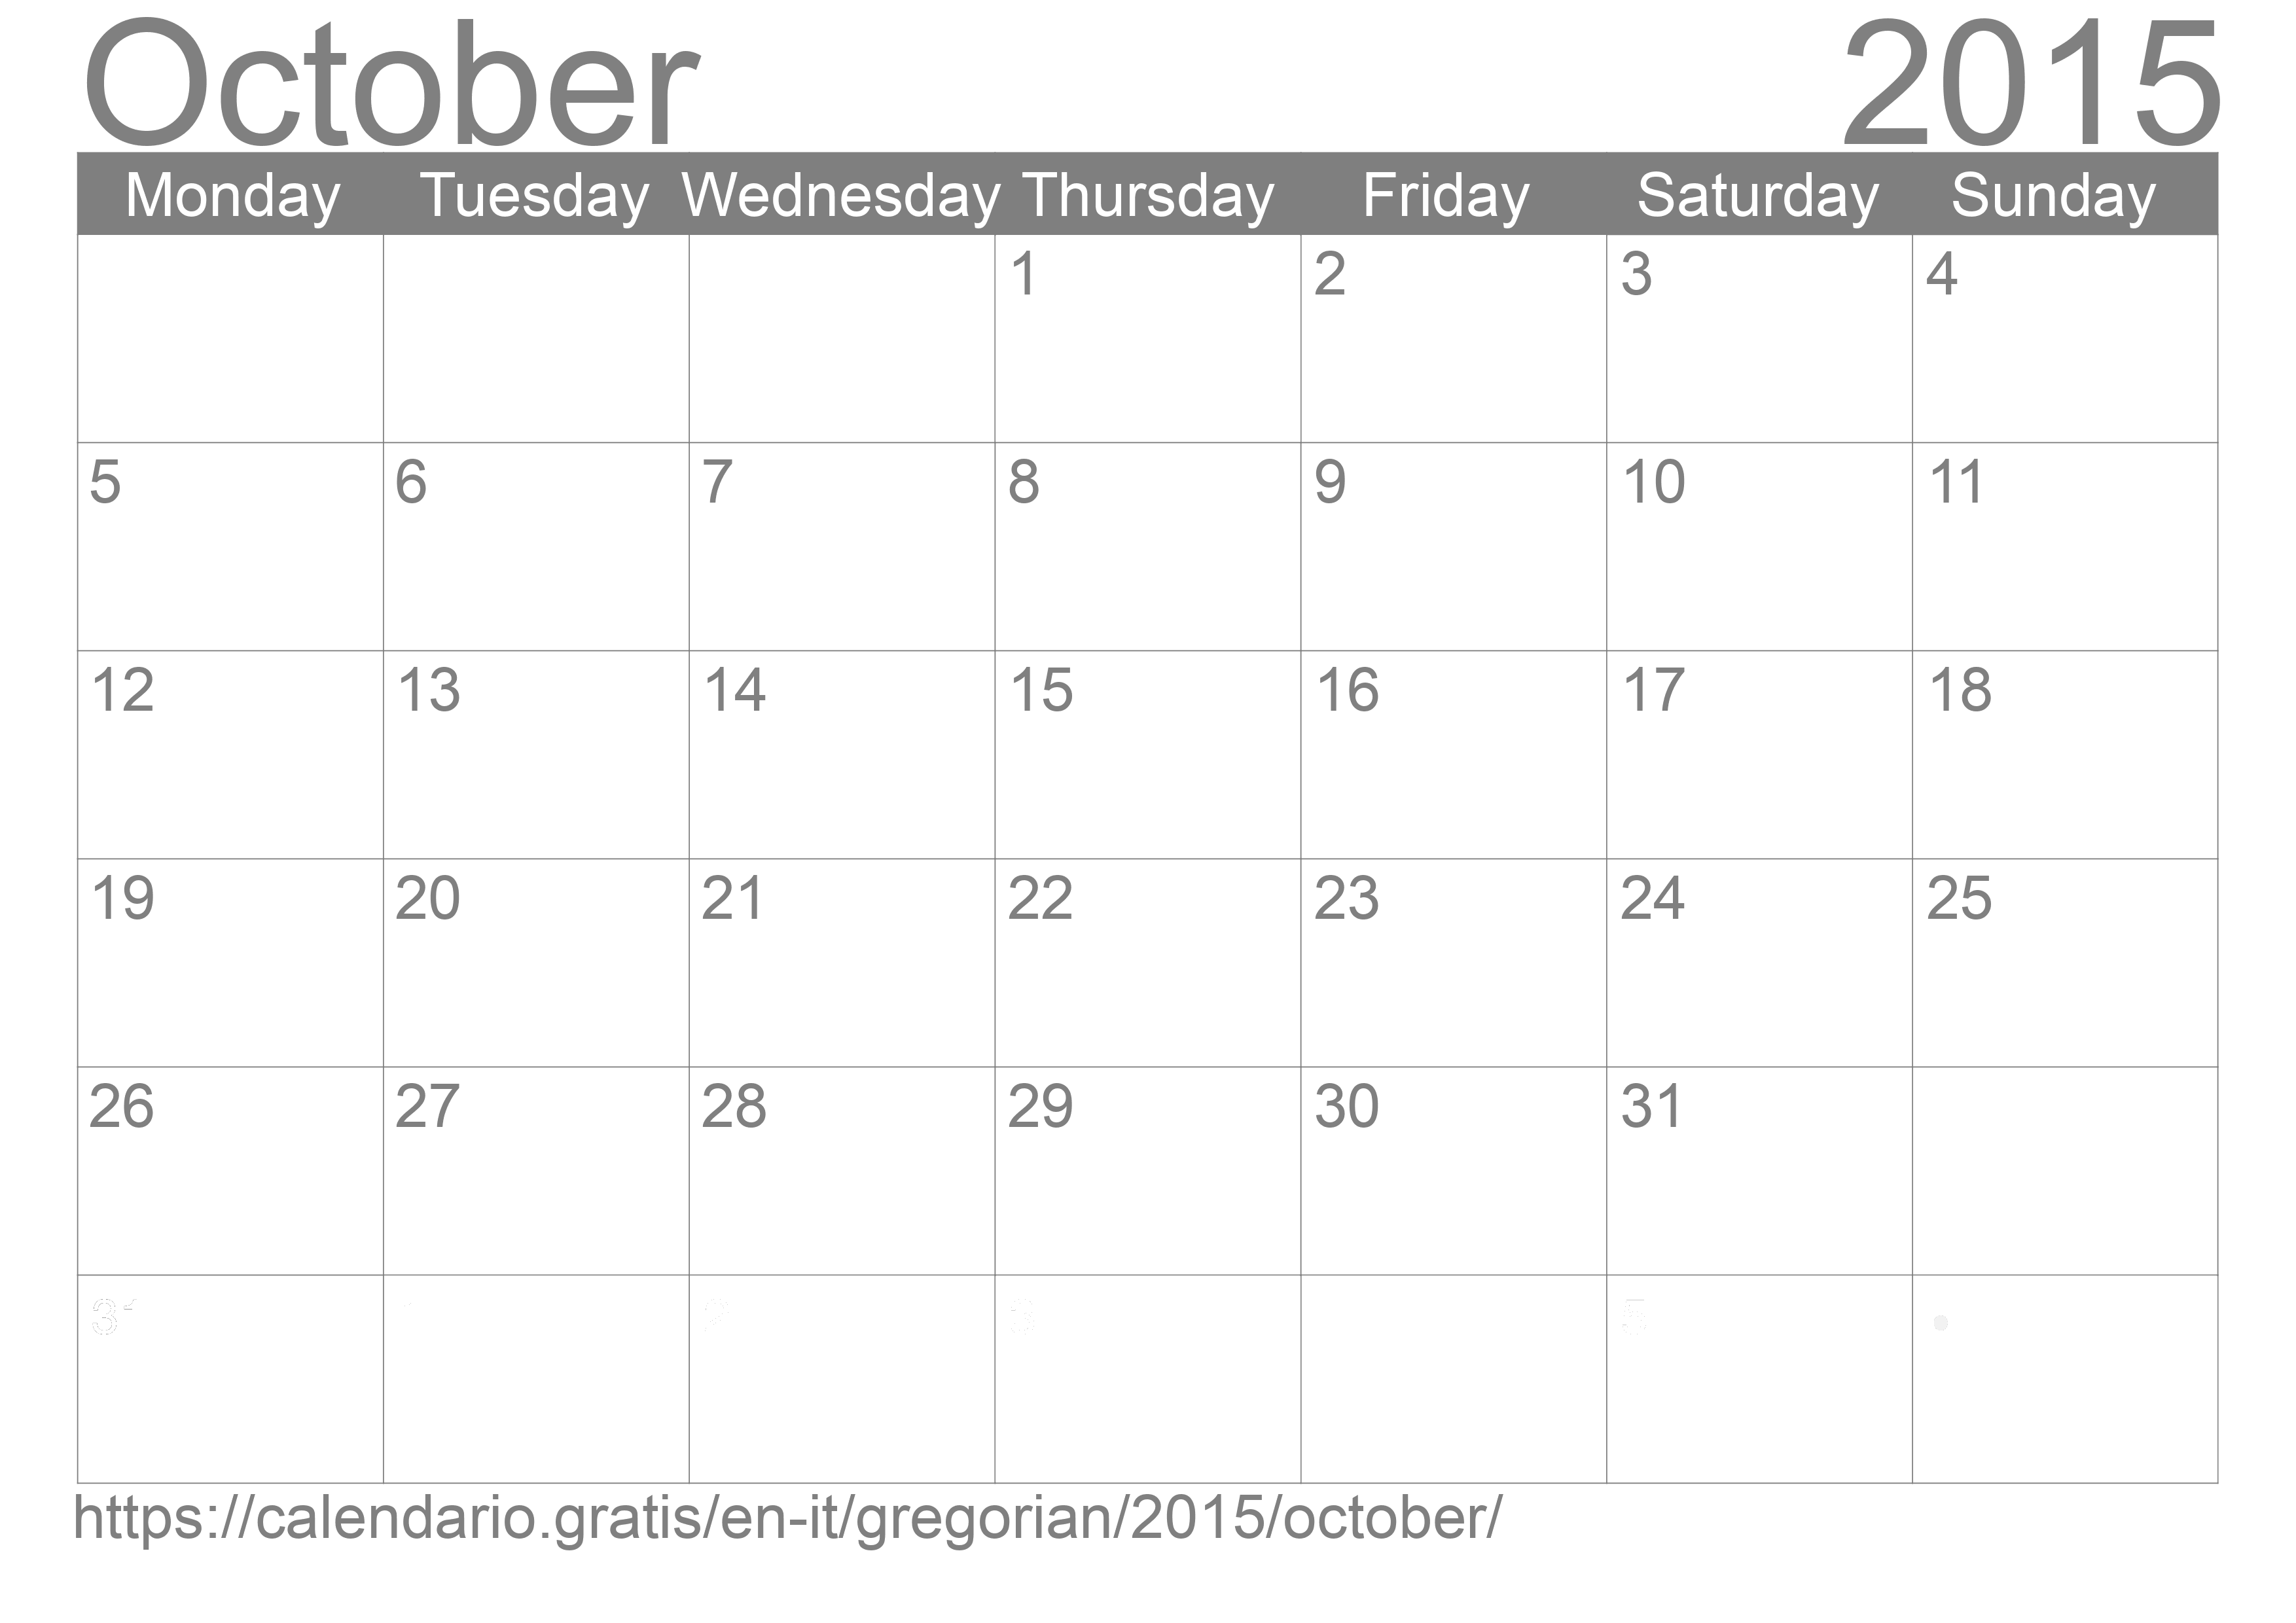 Calendar October 2015 to print